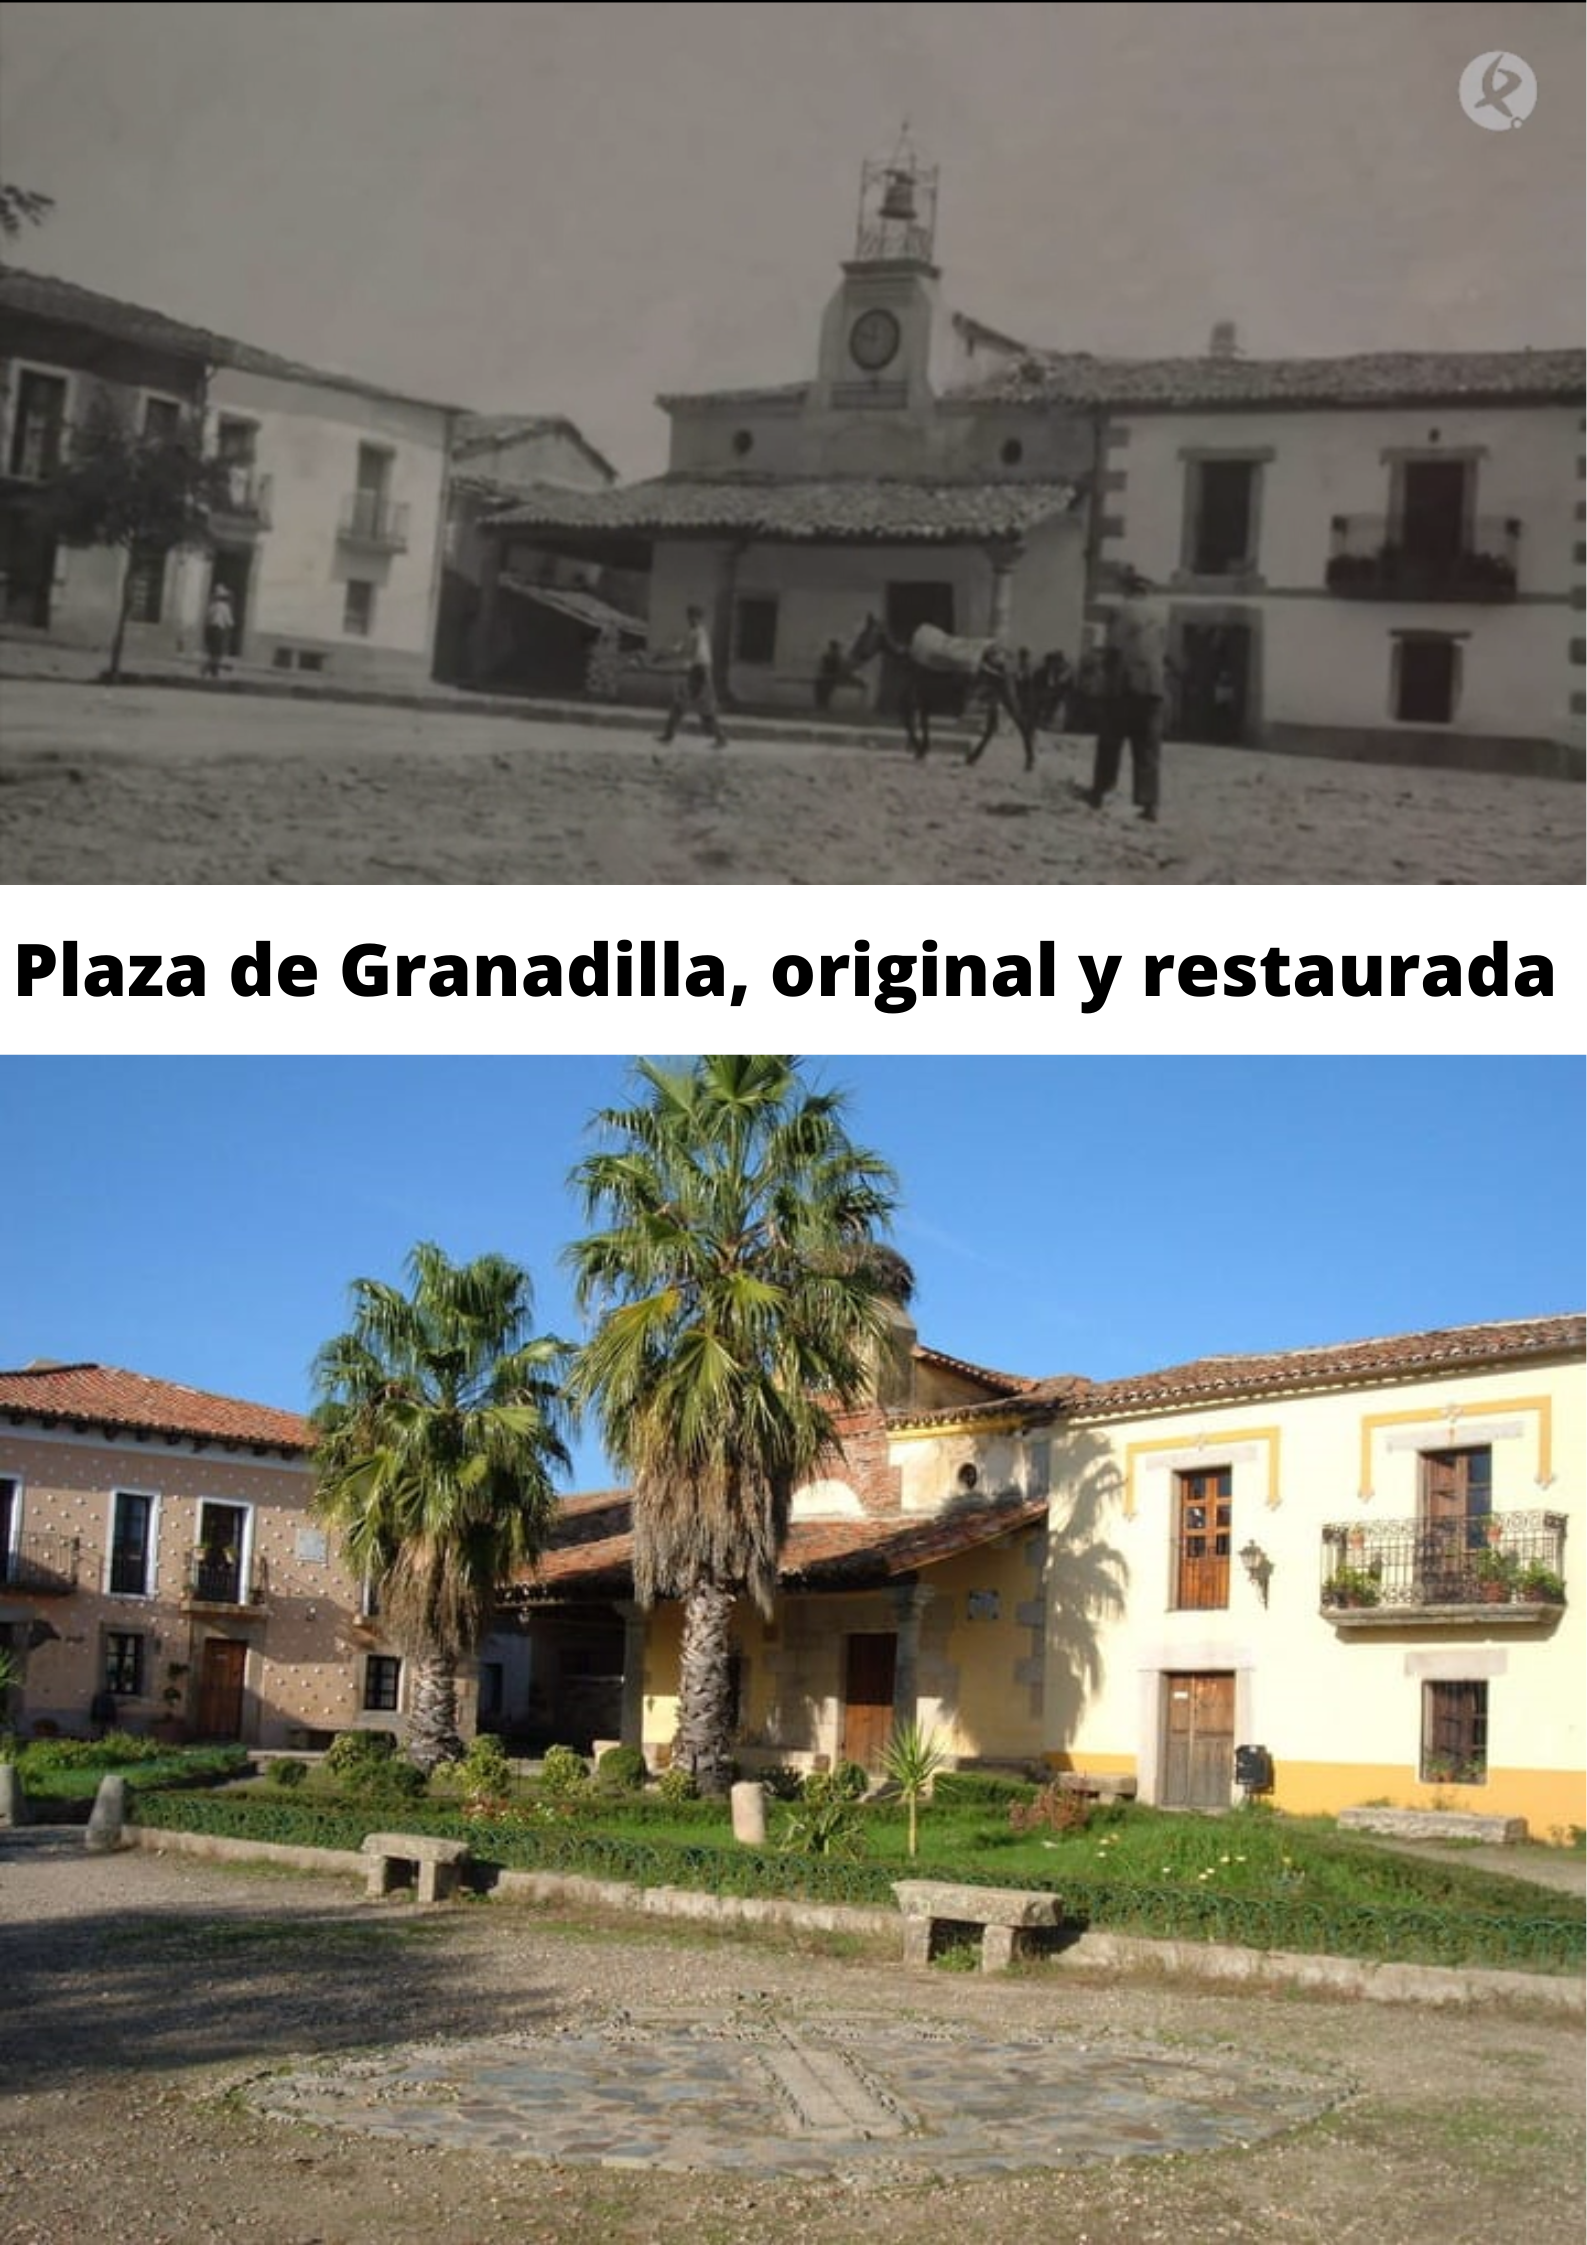 Plaza de Granadilla, original y restaurada